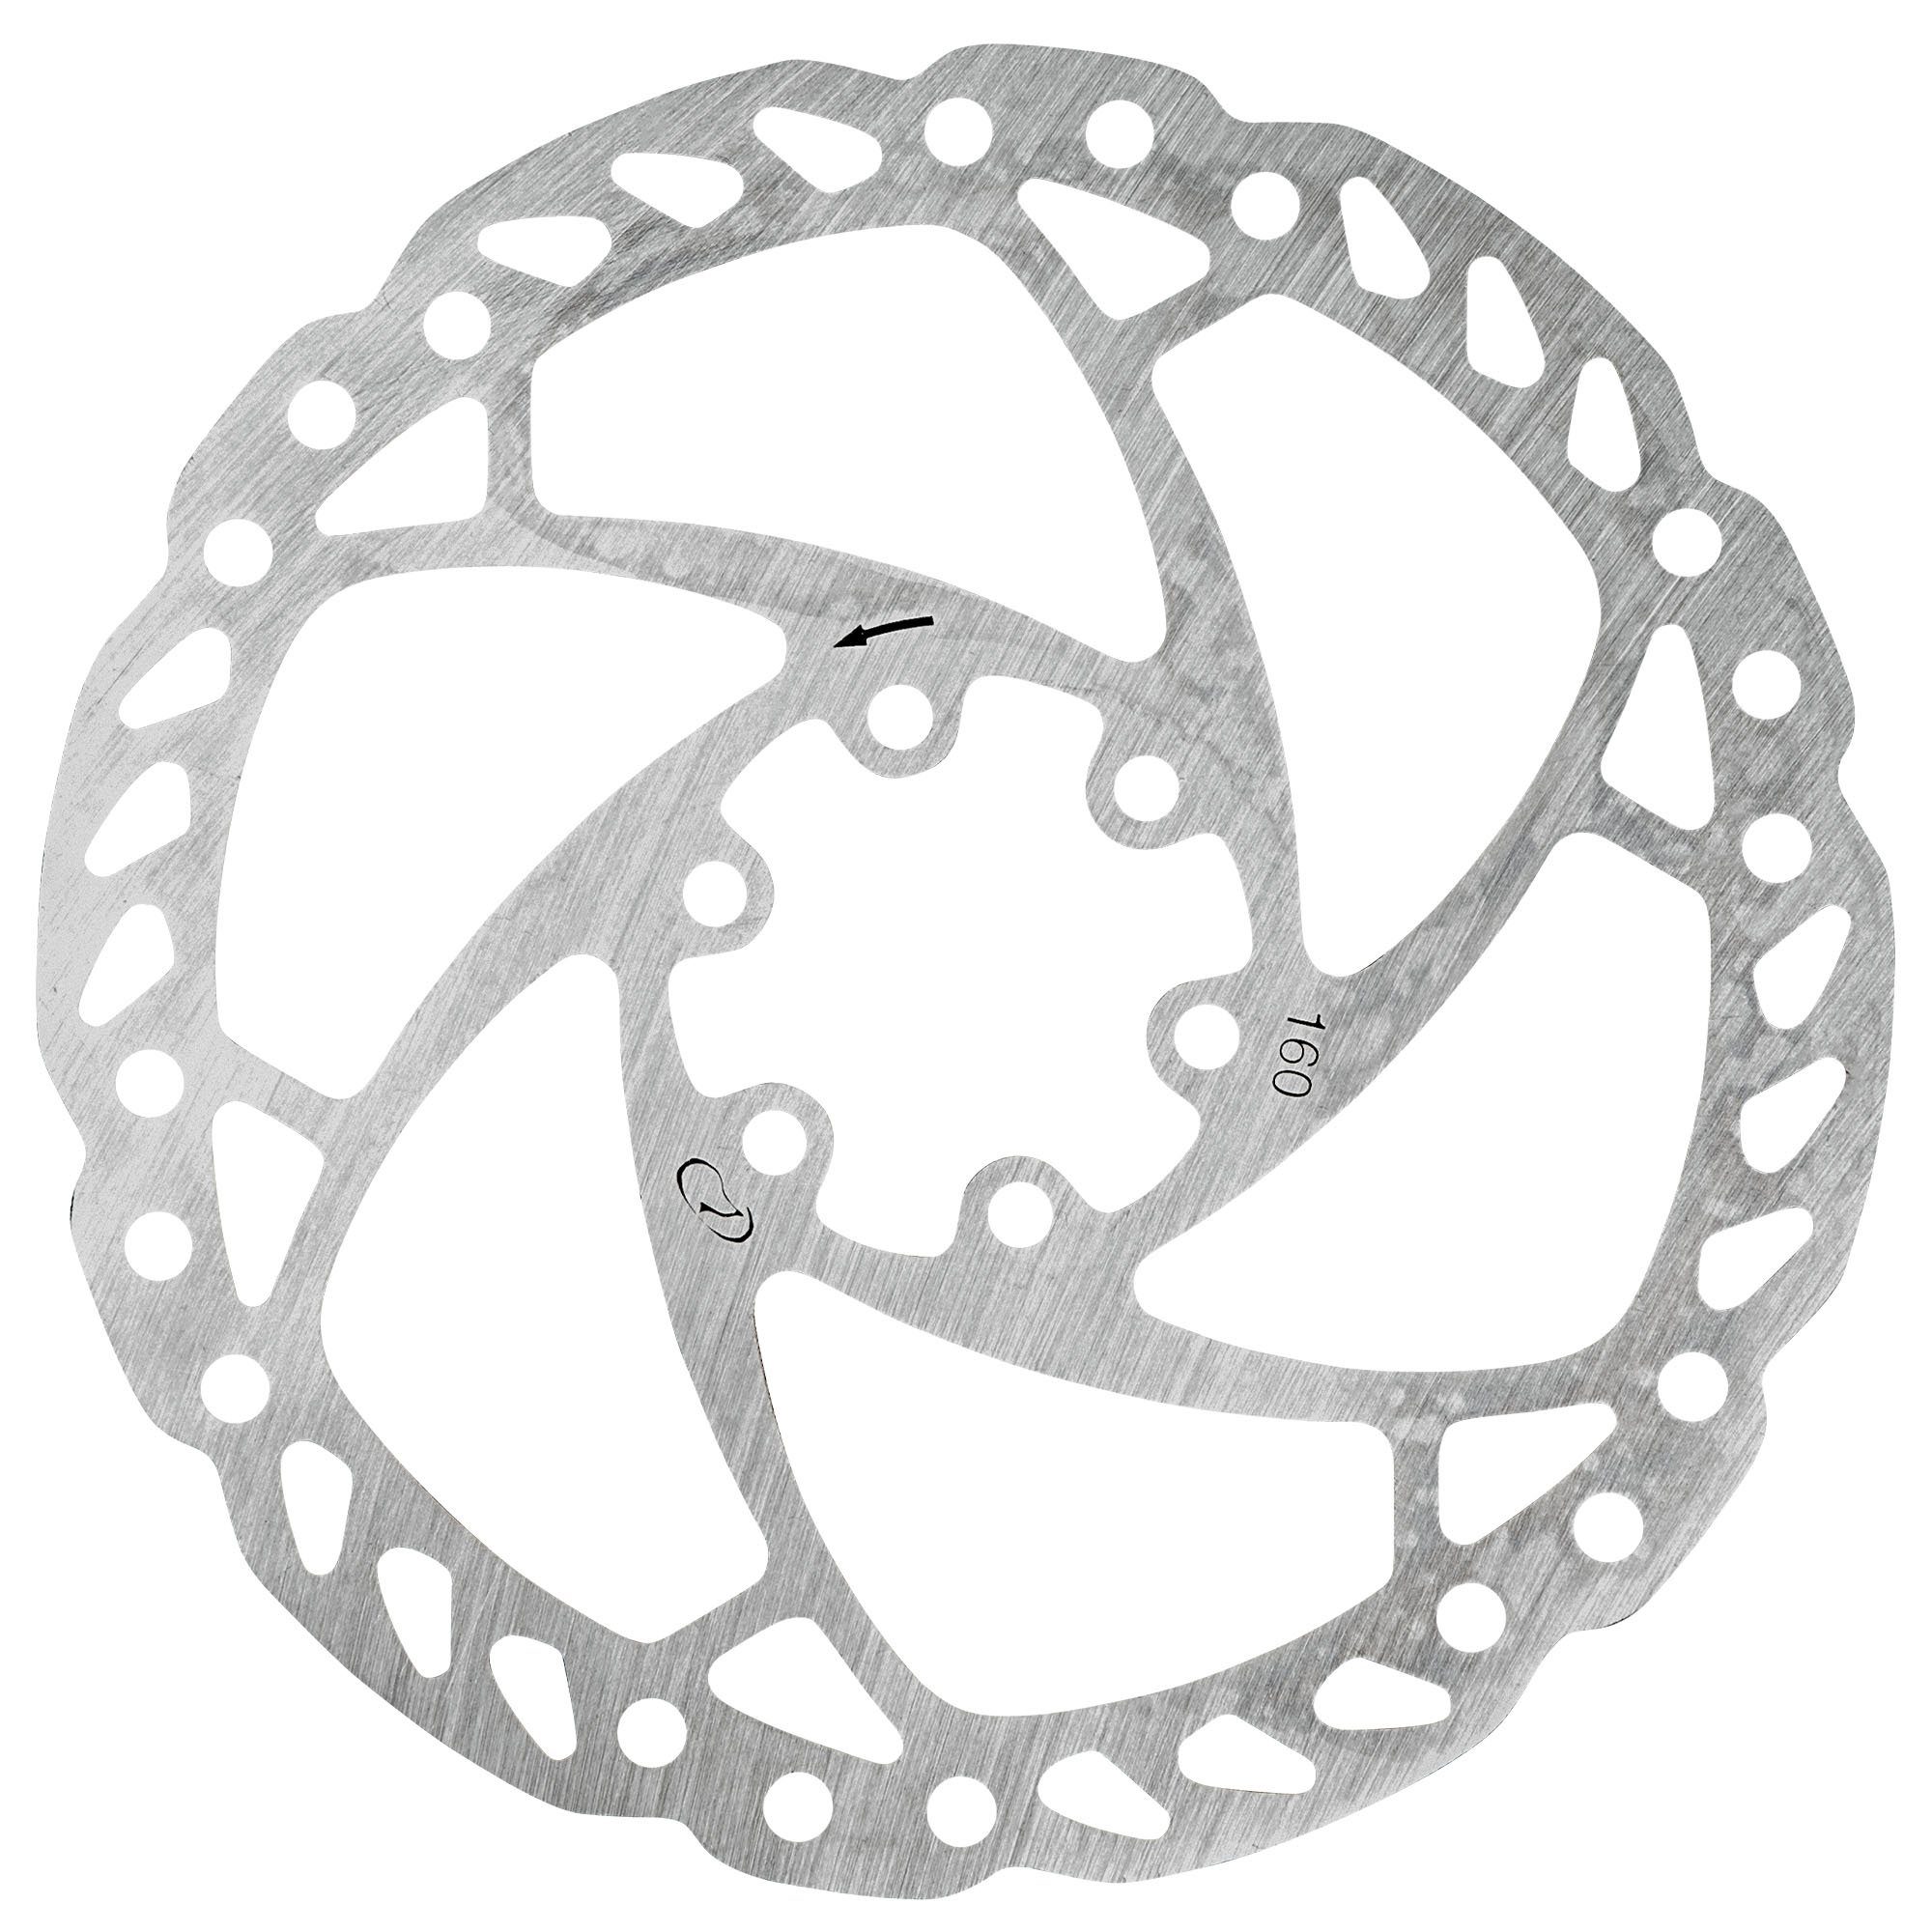 4 Fahrrad Bremsbeläge Scheibenbremse Bremsschuhe geeignet für MT2